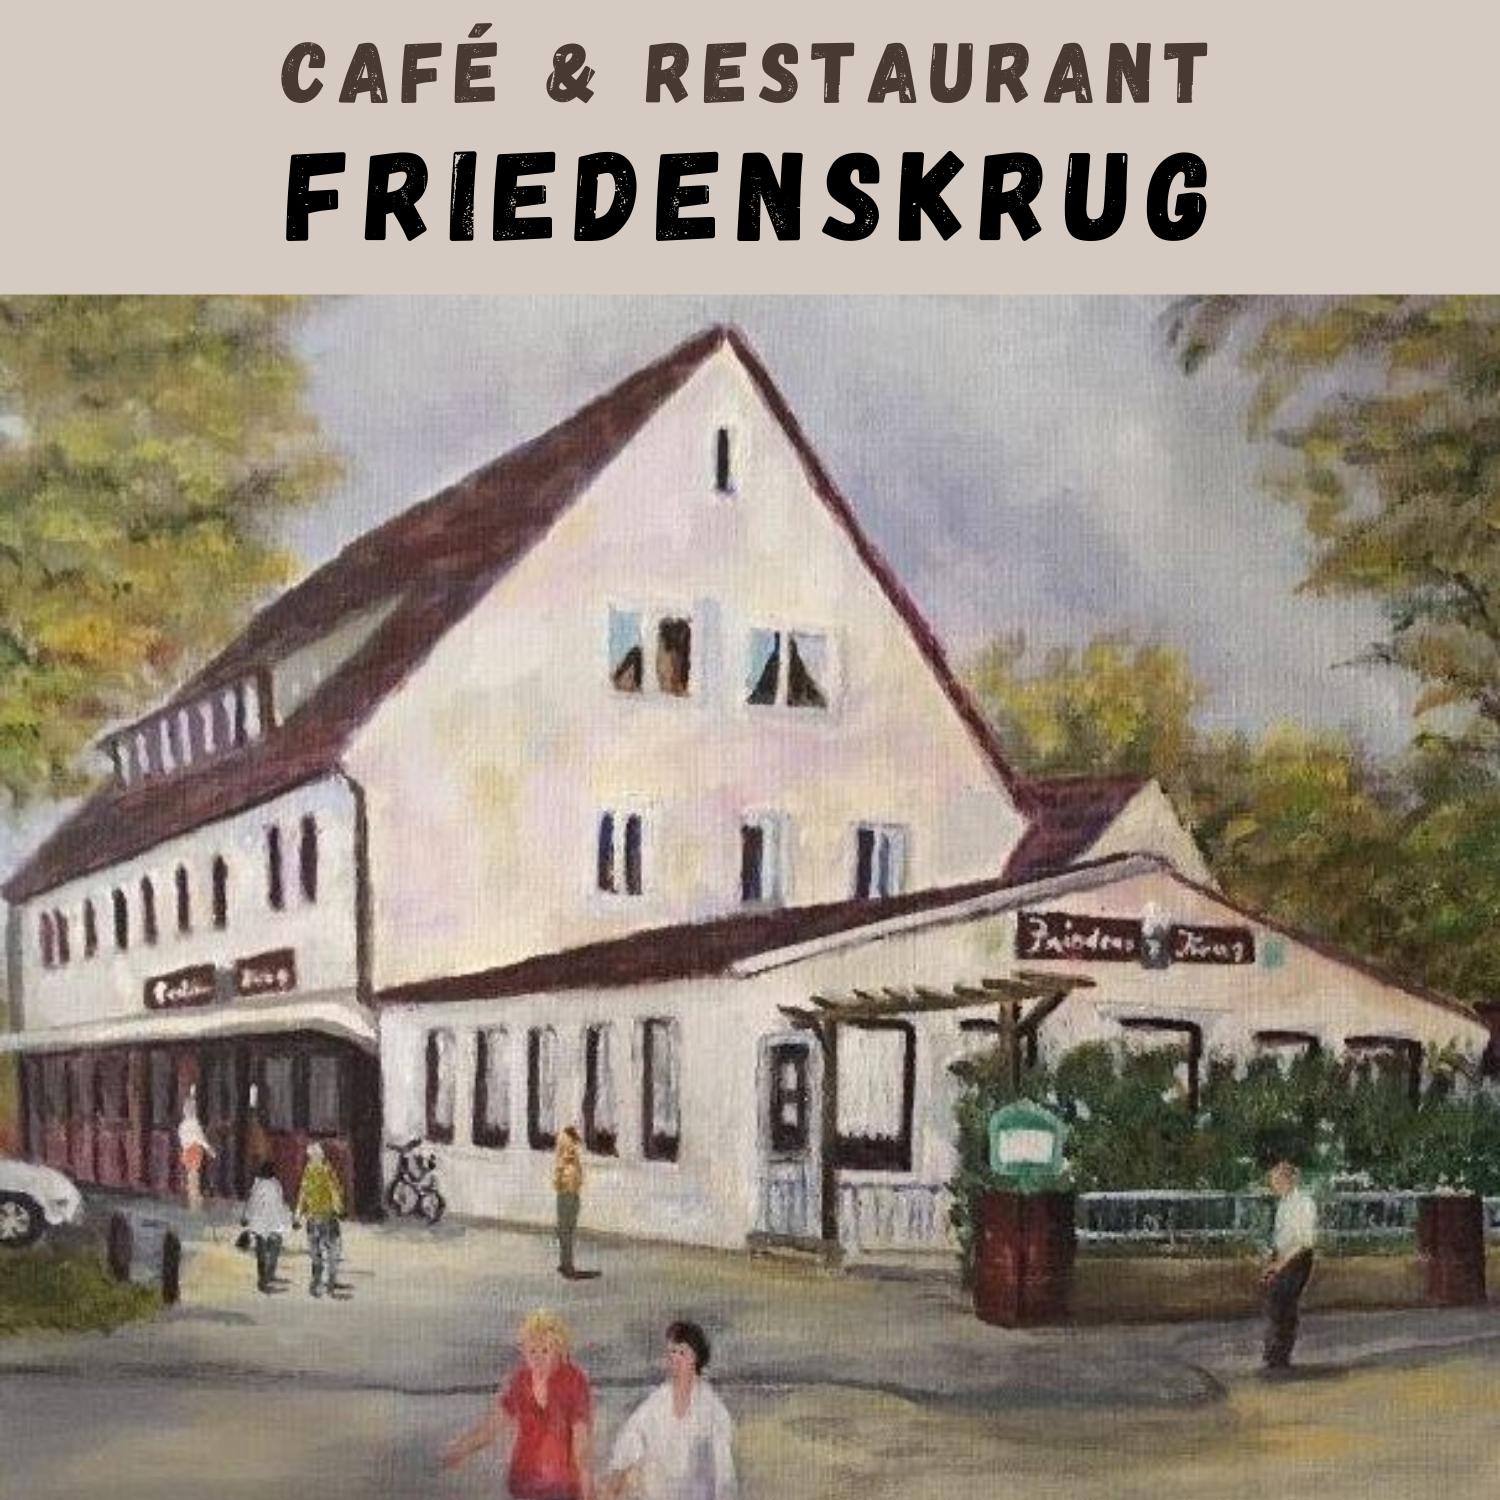 Café & Restaurant Friedenskrug